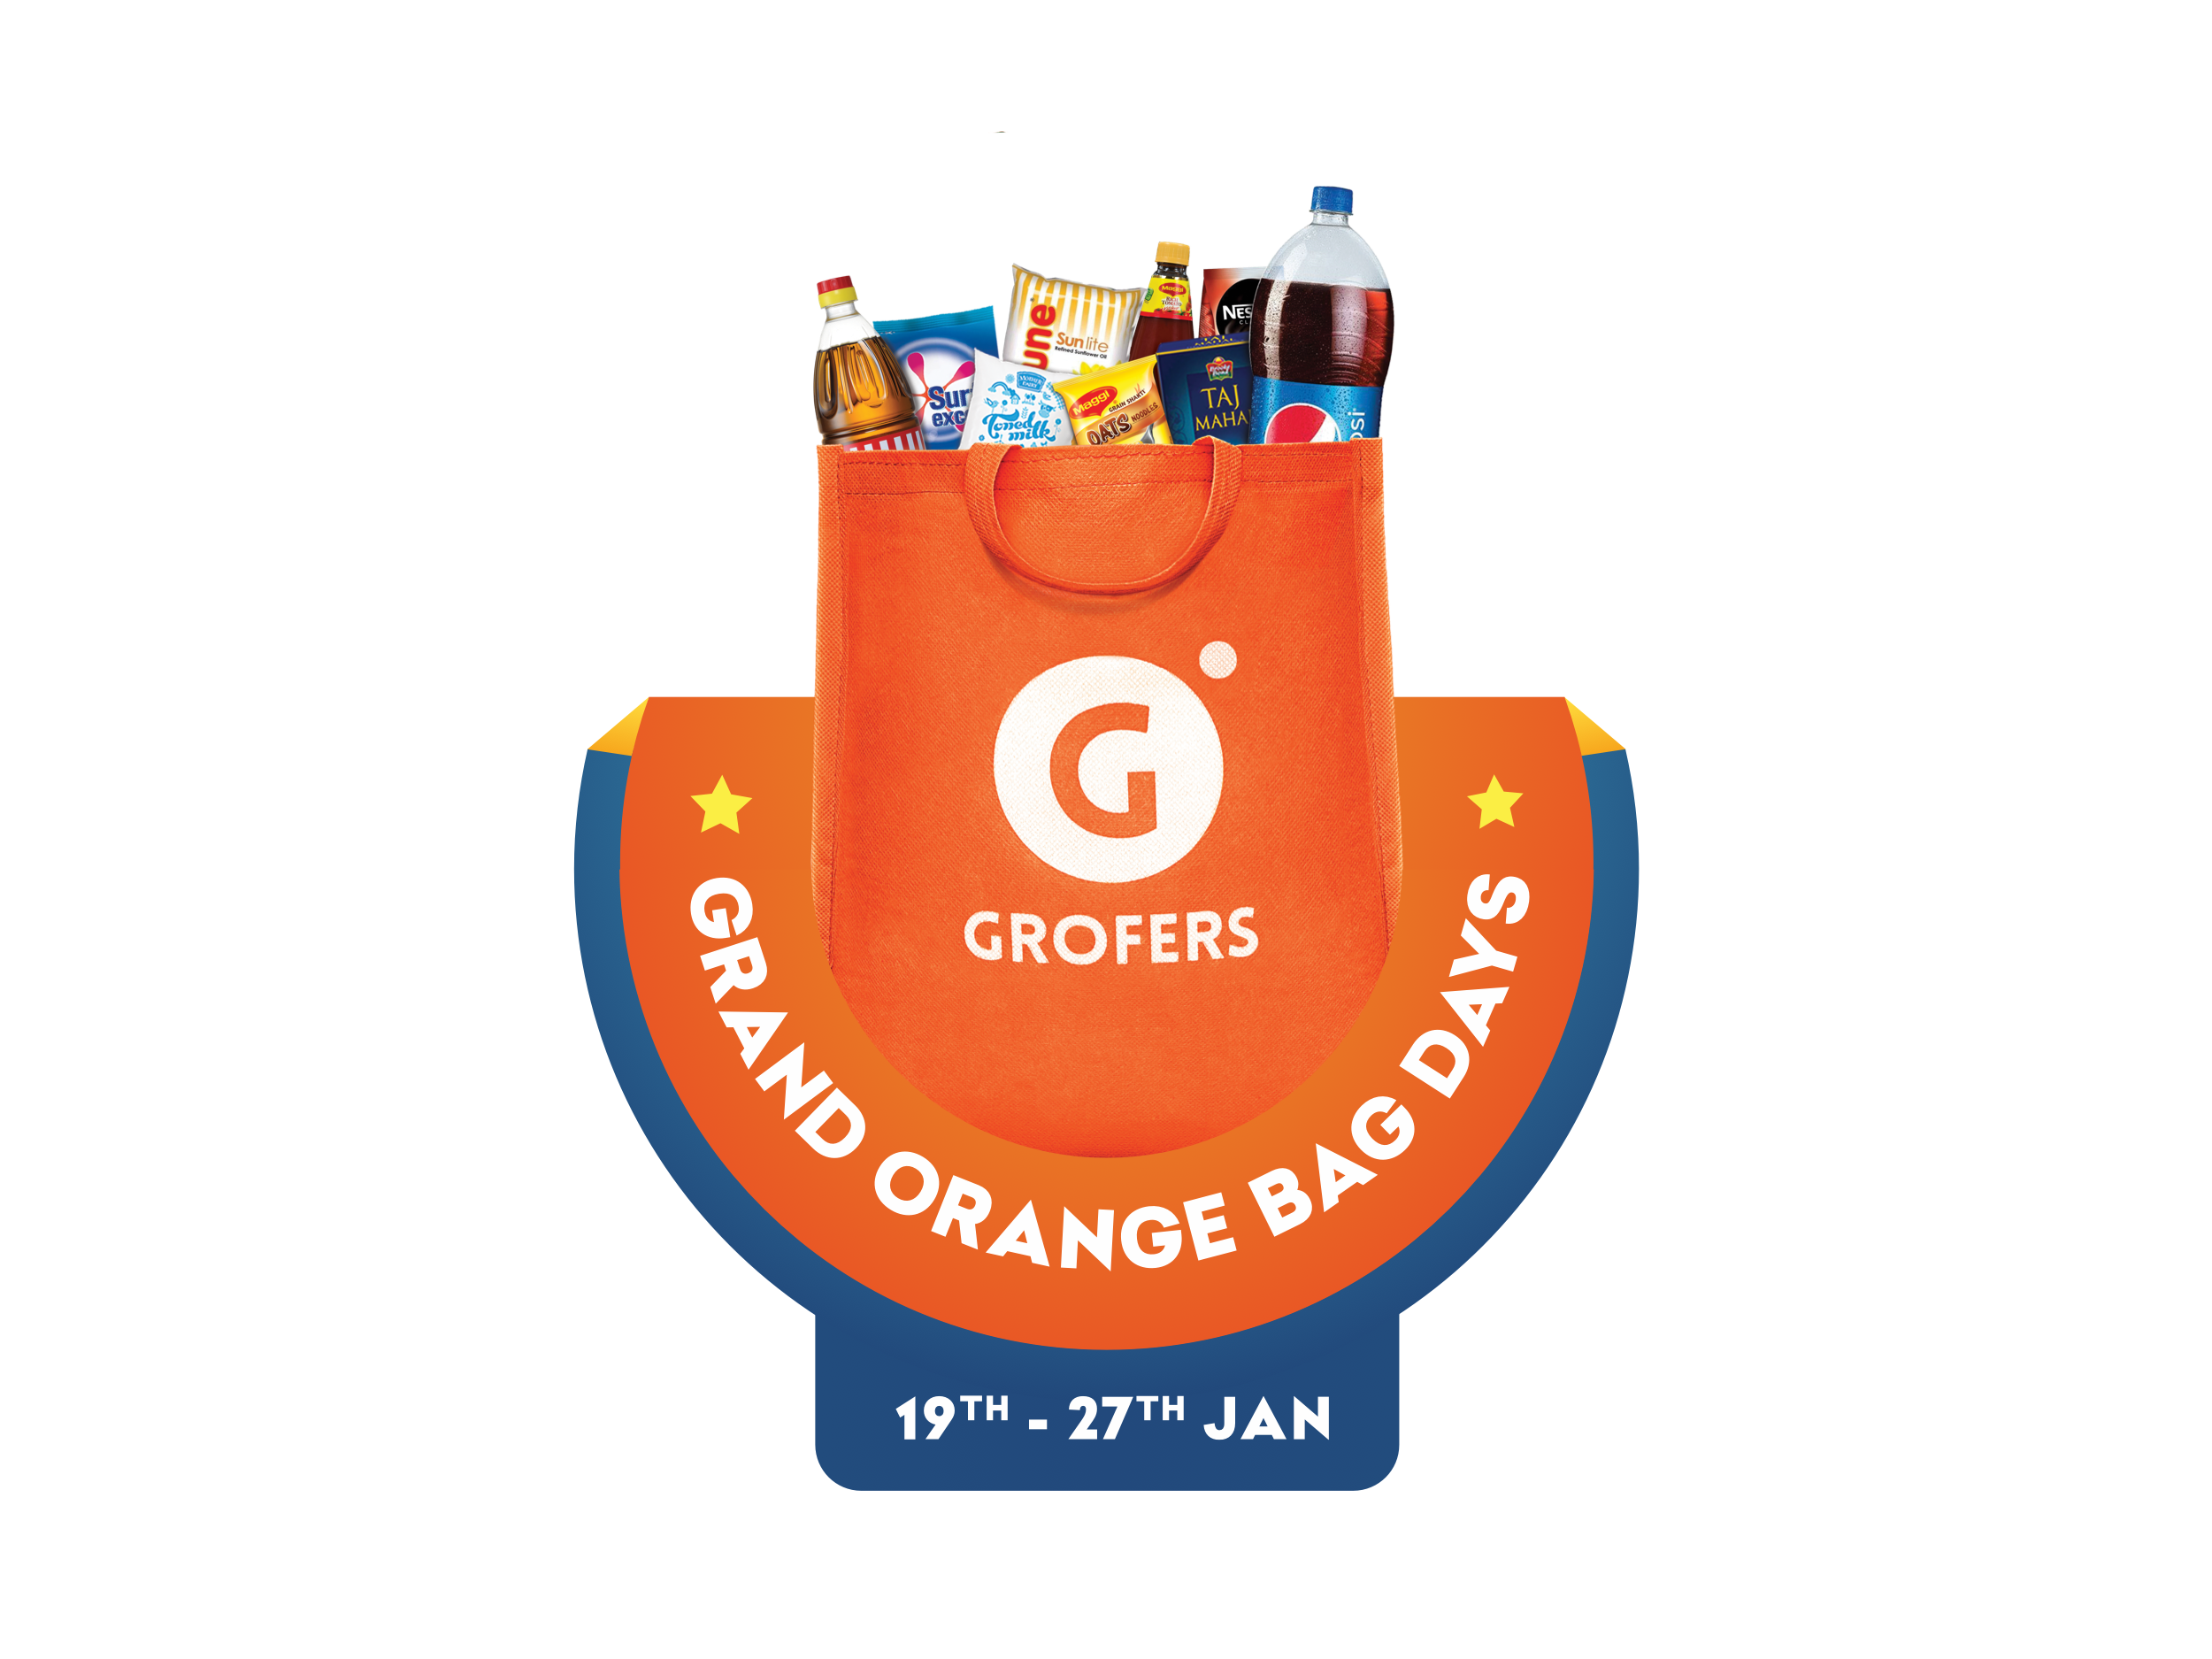 Grofers Grand Orange Bag Days Deal details